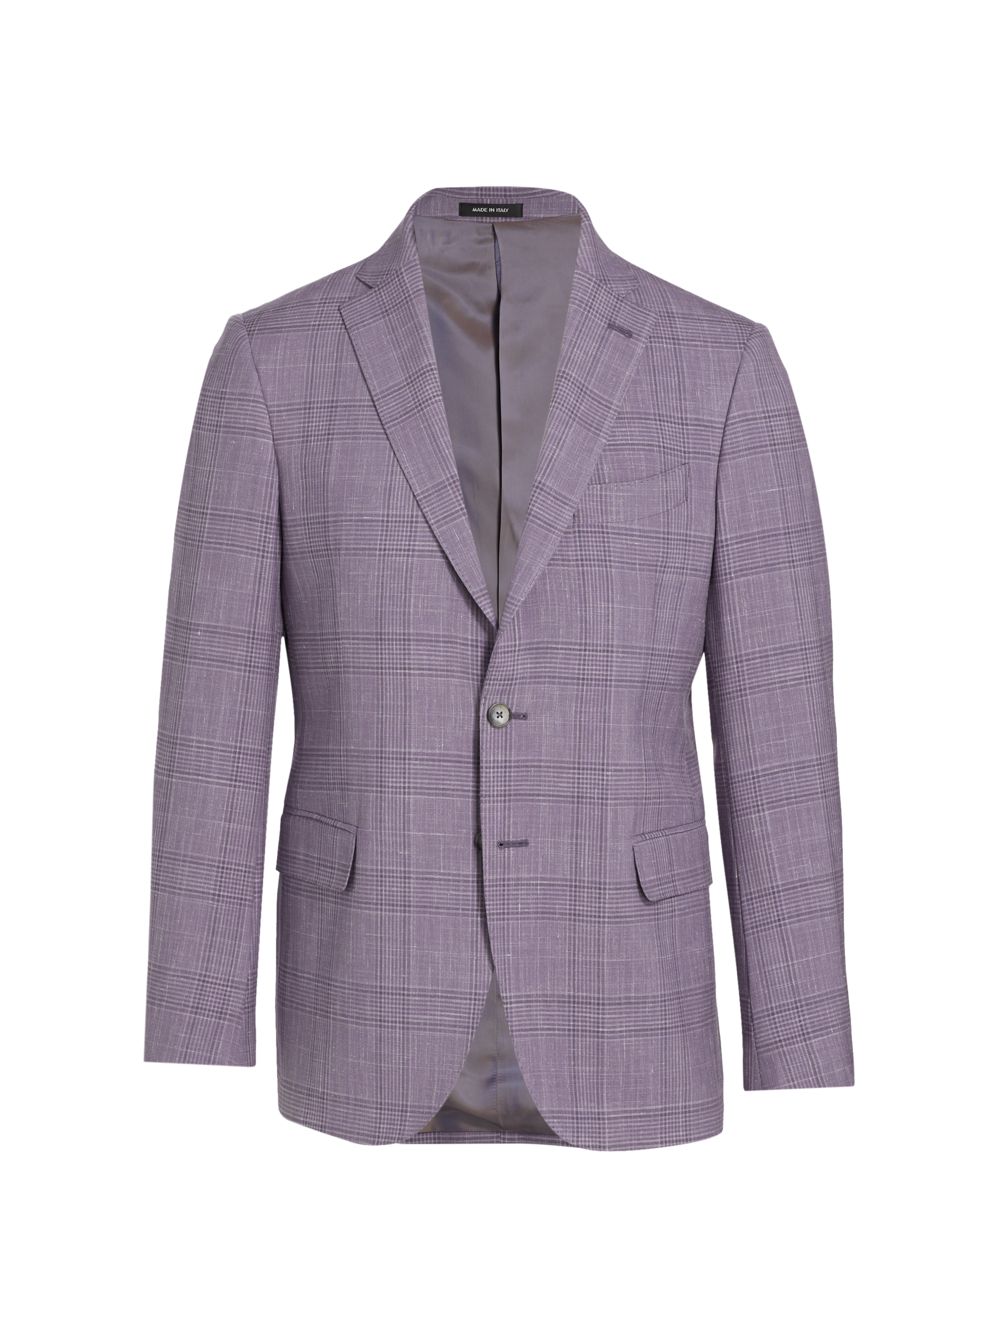 Пиджак из текстурированной шерсти в клетку Saks Fifth Avenue, фиолетовый